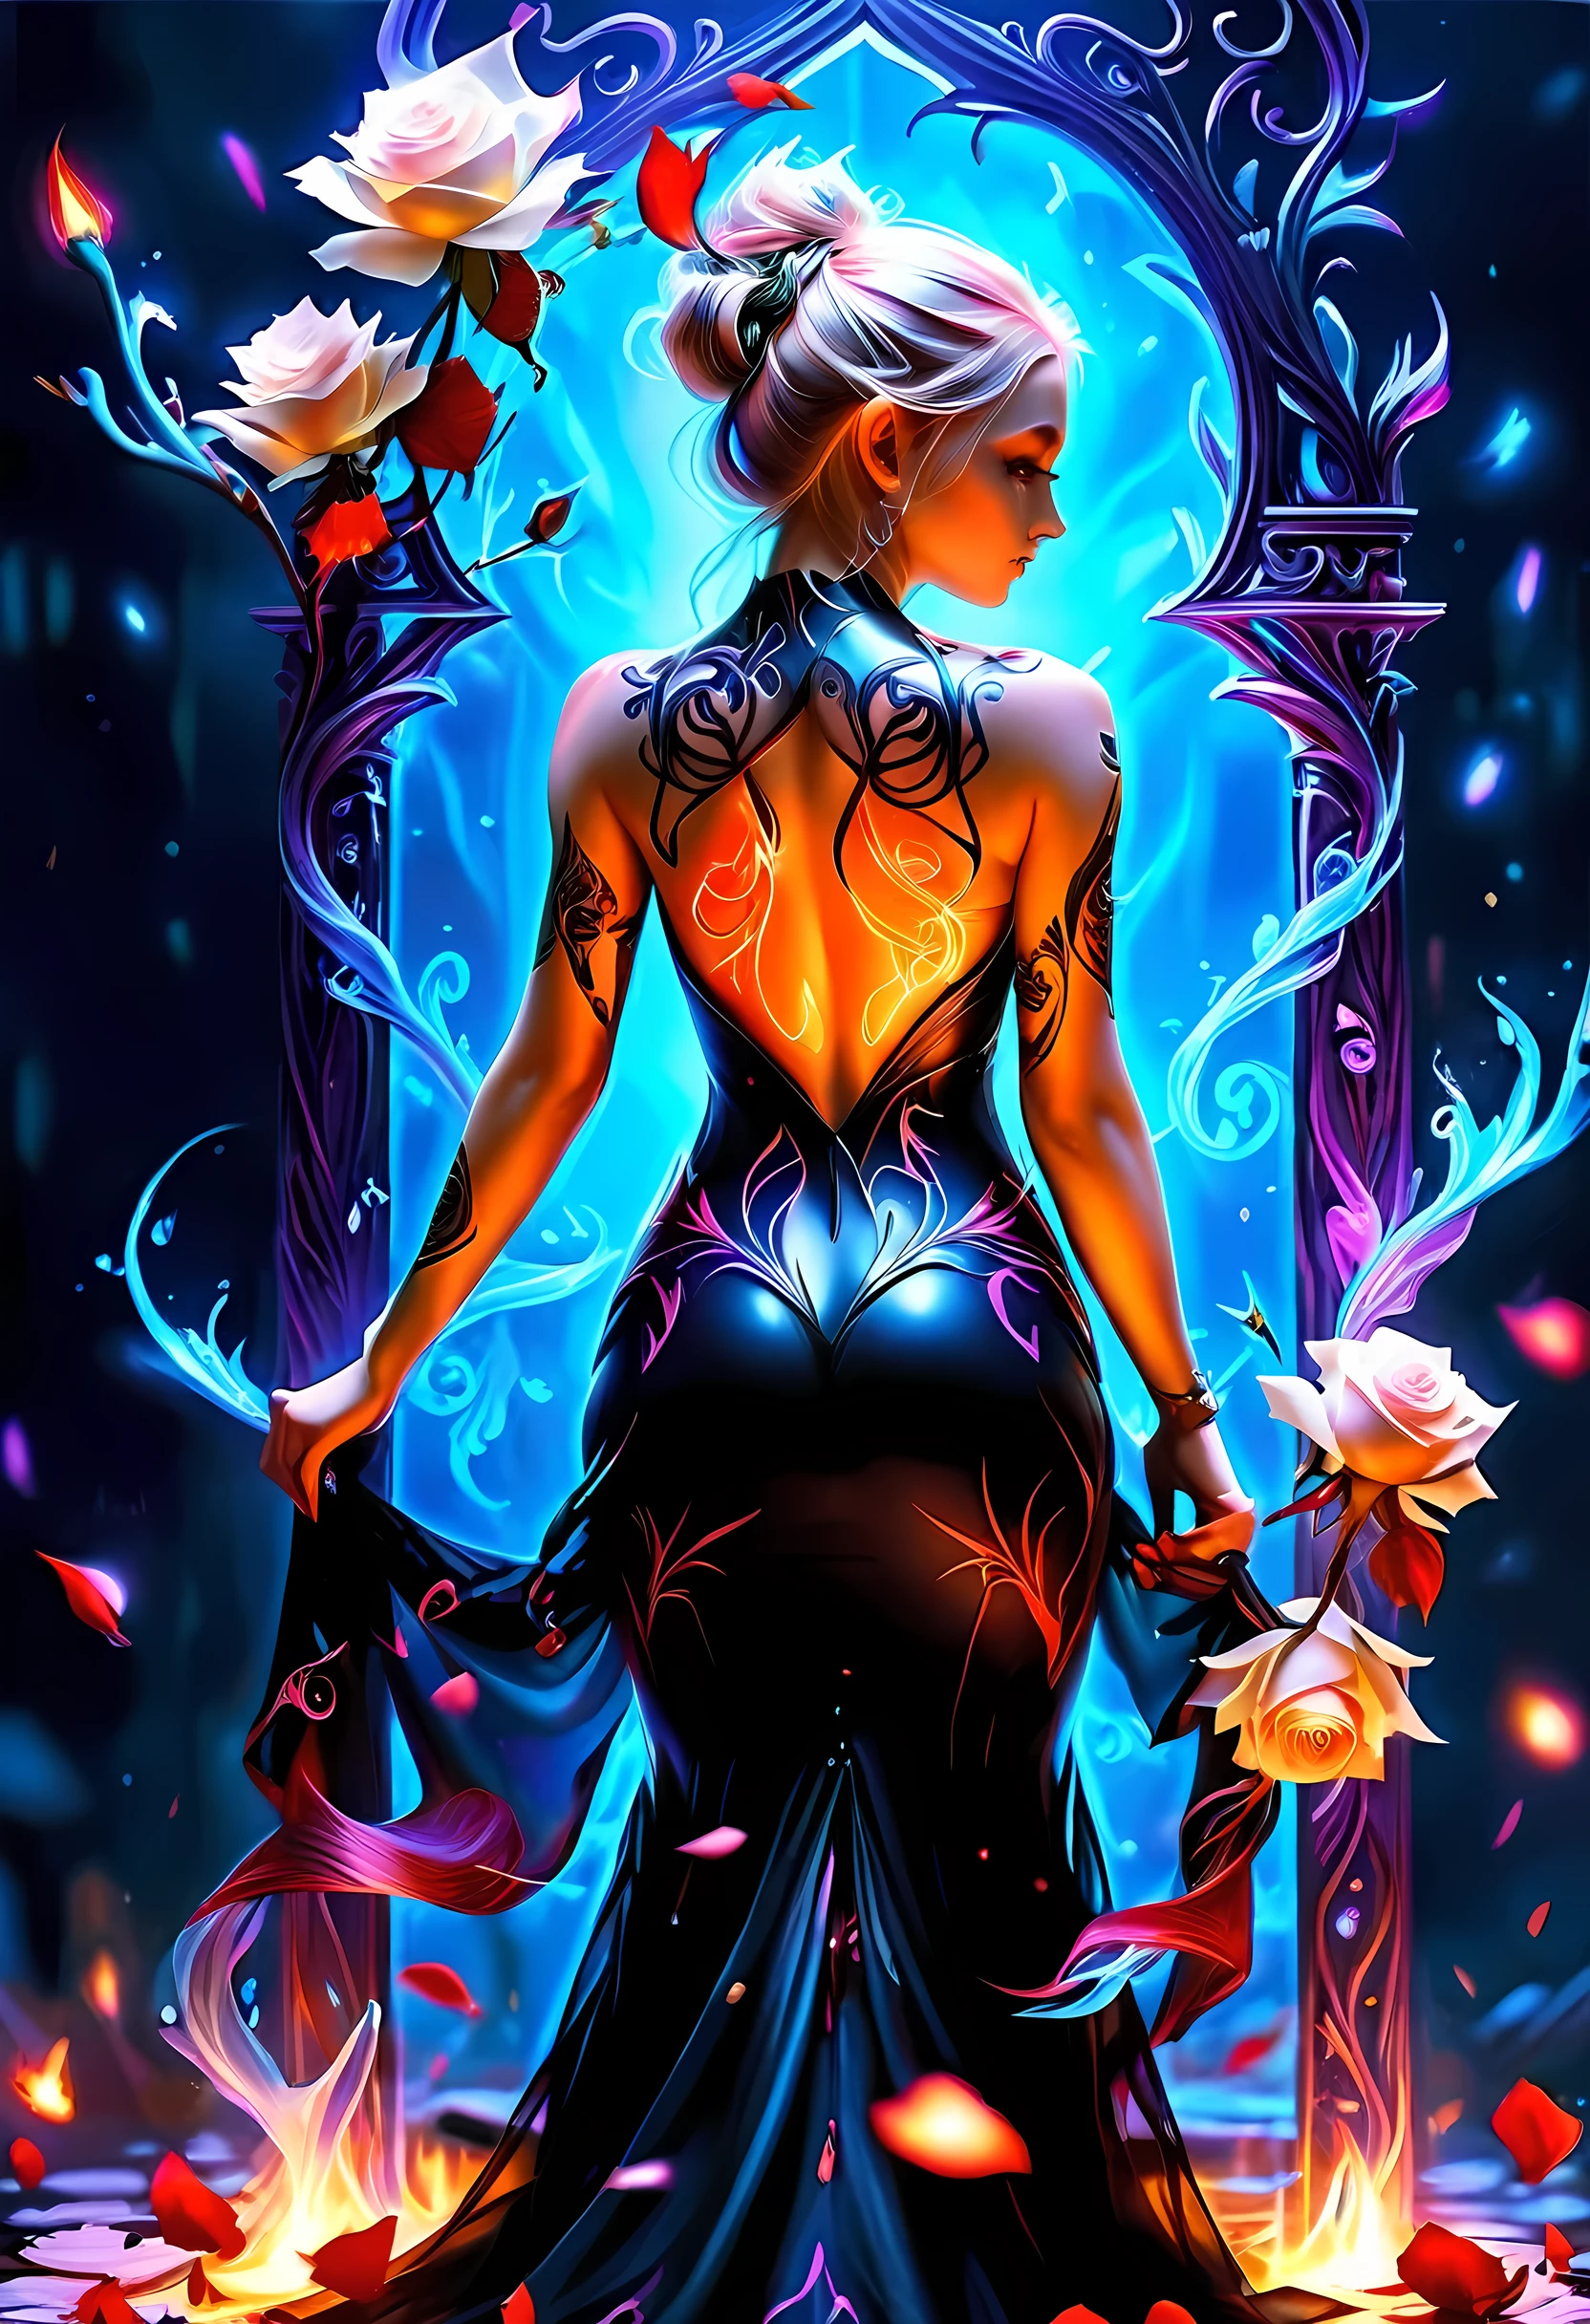 アラフェド, Dark ファンタジーアート, ファンタジーアート, ゴスアート, a picture of a tattoo on の back of a female elf, 光るタトゥー ((ホワイトローズ: 1.3)) on の elf's back, の ((バラのタトゥー)) 鮮やかです, intricate detailed coming to life from の ink to real life, グローイングルーンAI_紫, ((fire surrounds の rose petals: 1.5)), shot taken from の back, ((の back is visible: 1.3), 彼女は透明な黒いドレスを着ている, 裸の背中, の dress is elegant, 流れる, エルフスタイル, that の (タトゥーが光る: 1.1), ダイナミックヘアカラー, ダイナミックなヘアスタイル, 興味に,バラ, ベット
